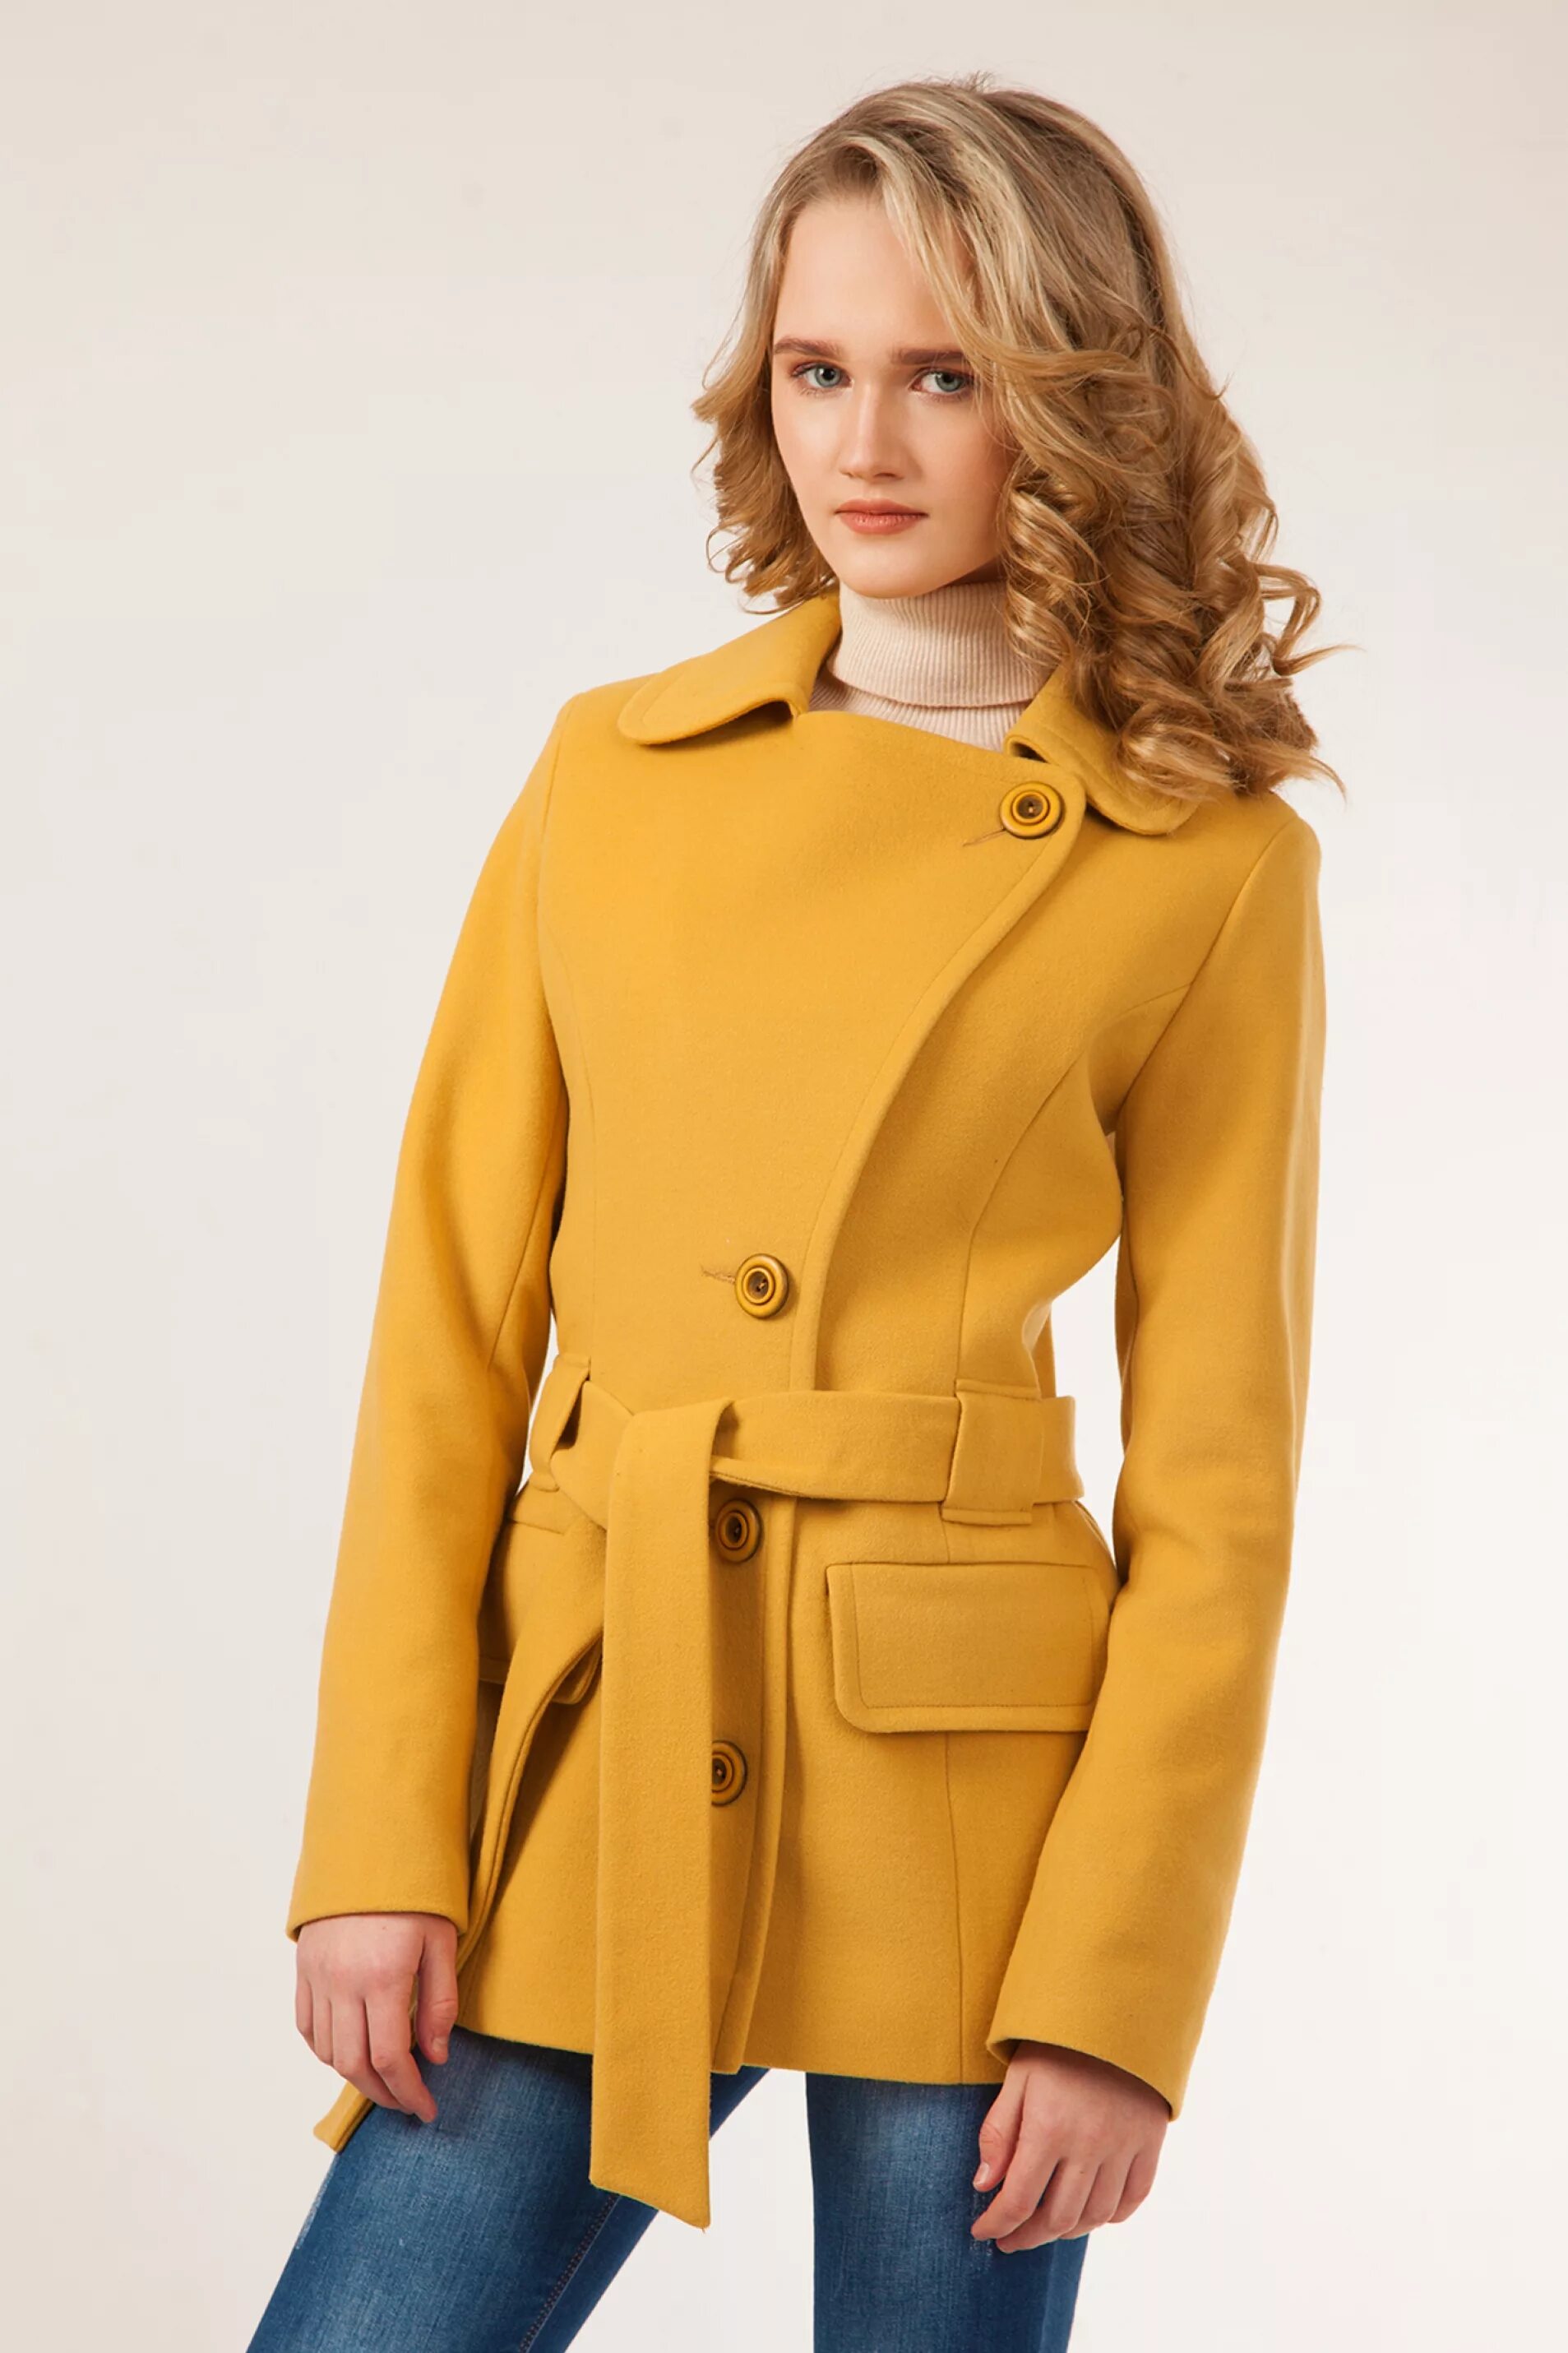 Распродажа демисезонного пальто. Avalon пальто драповое. Полупальто женское. Укороченное пальто женское. Укороченное полупальто женское.